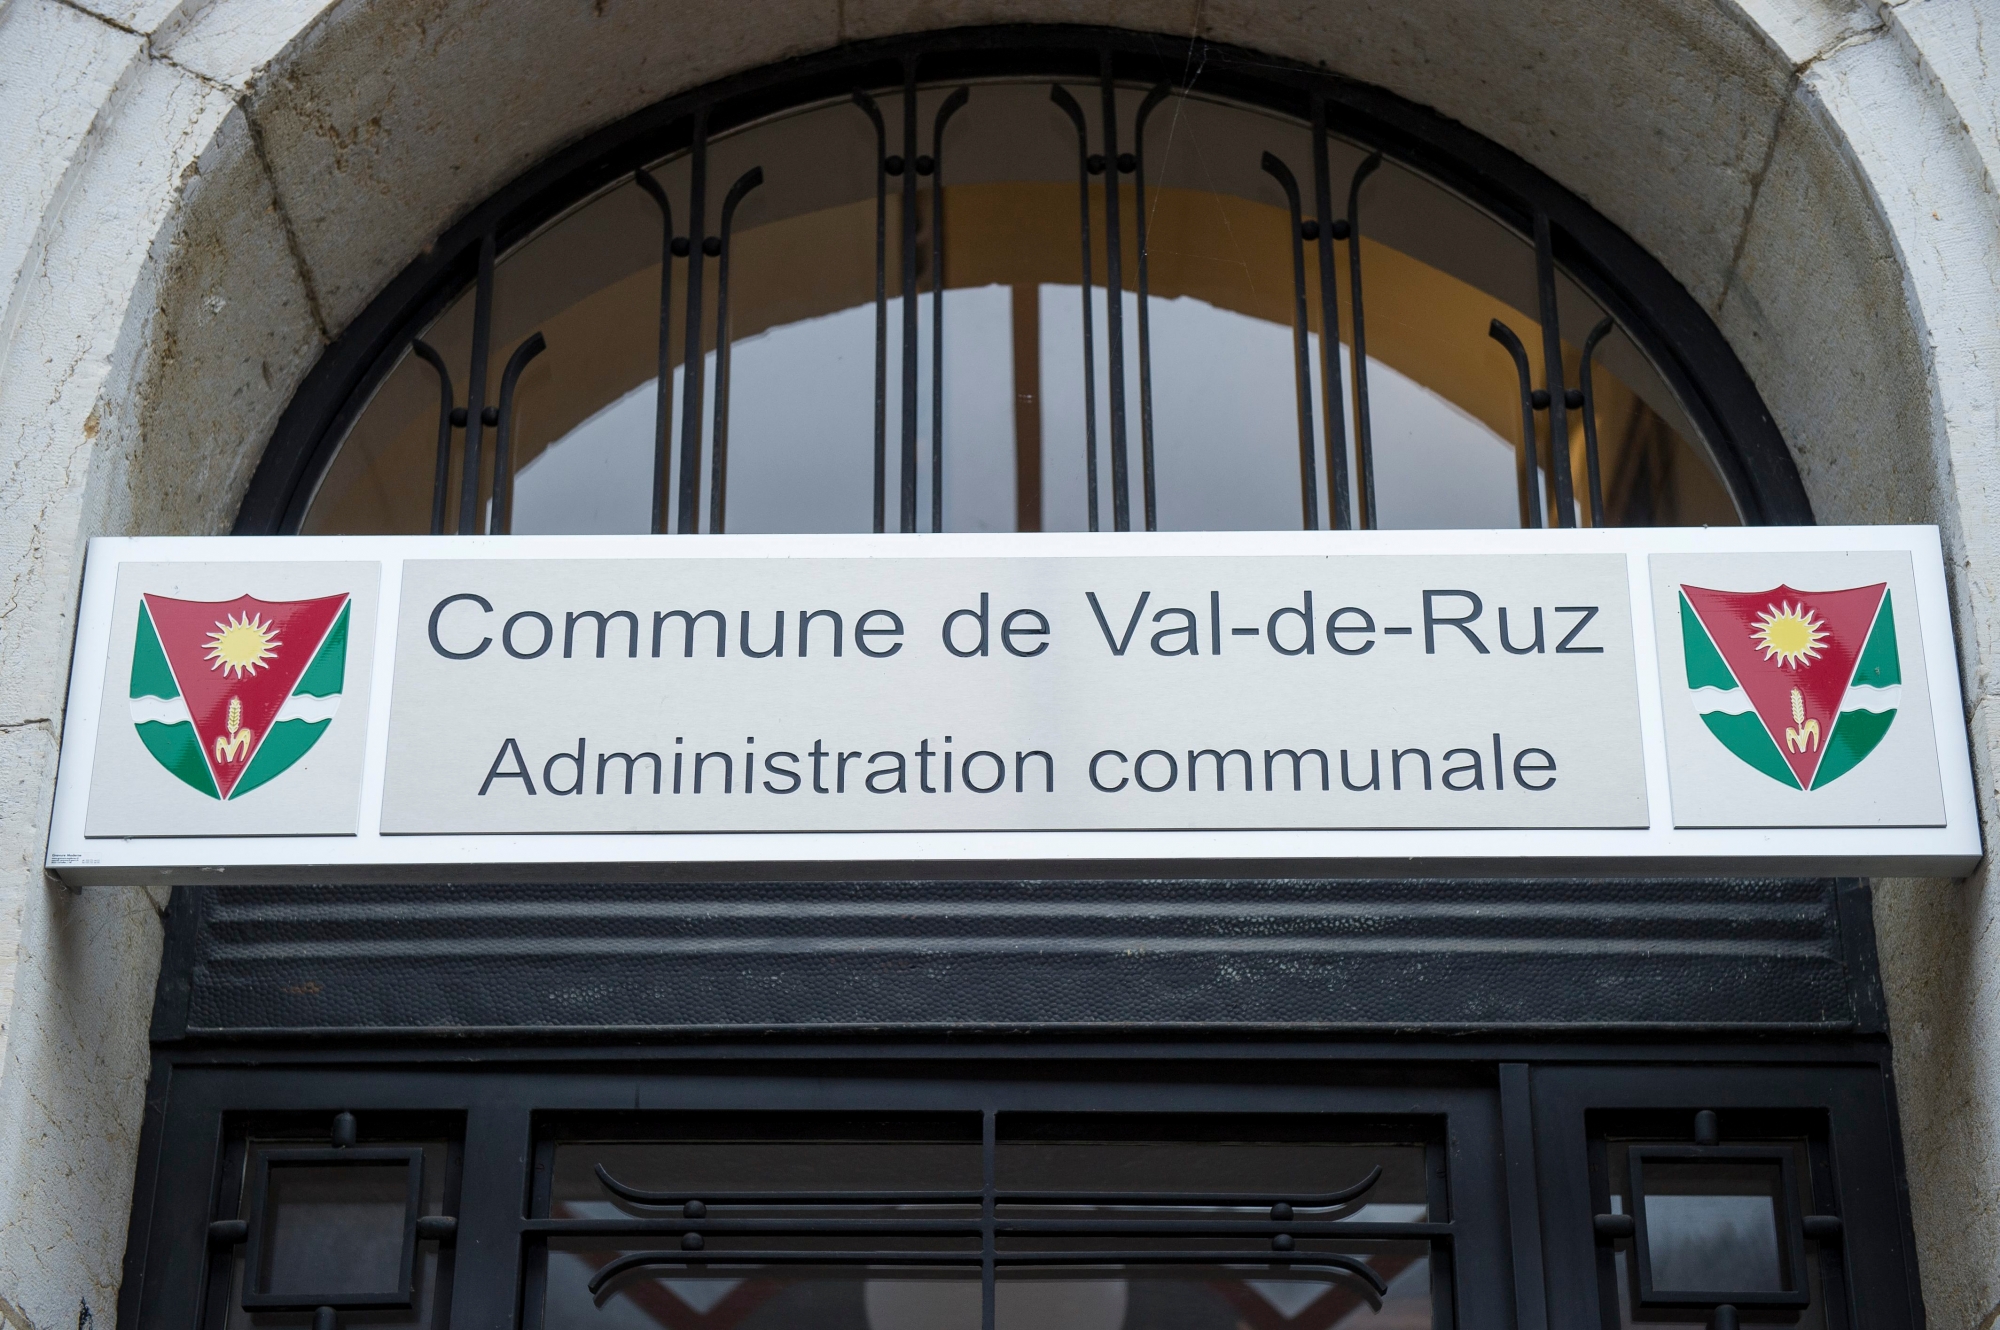 Administration communale: Commune de Val-de-Ruz

Cernier, le 8.12.2014, Photo : Lucas Vuitel VAL-DE-RUZ